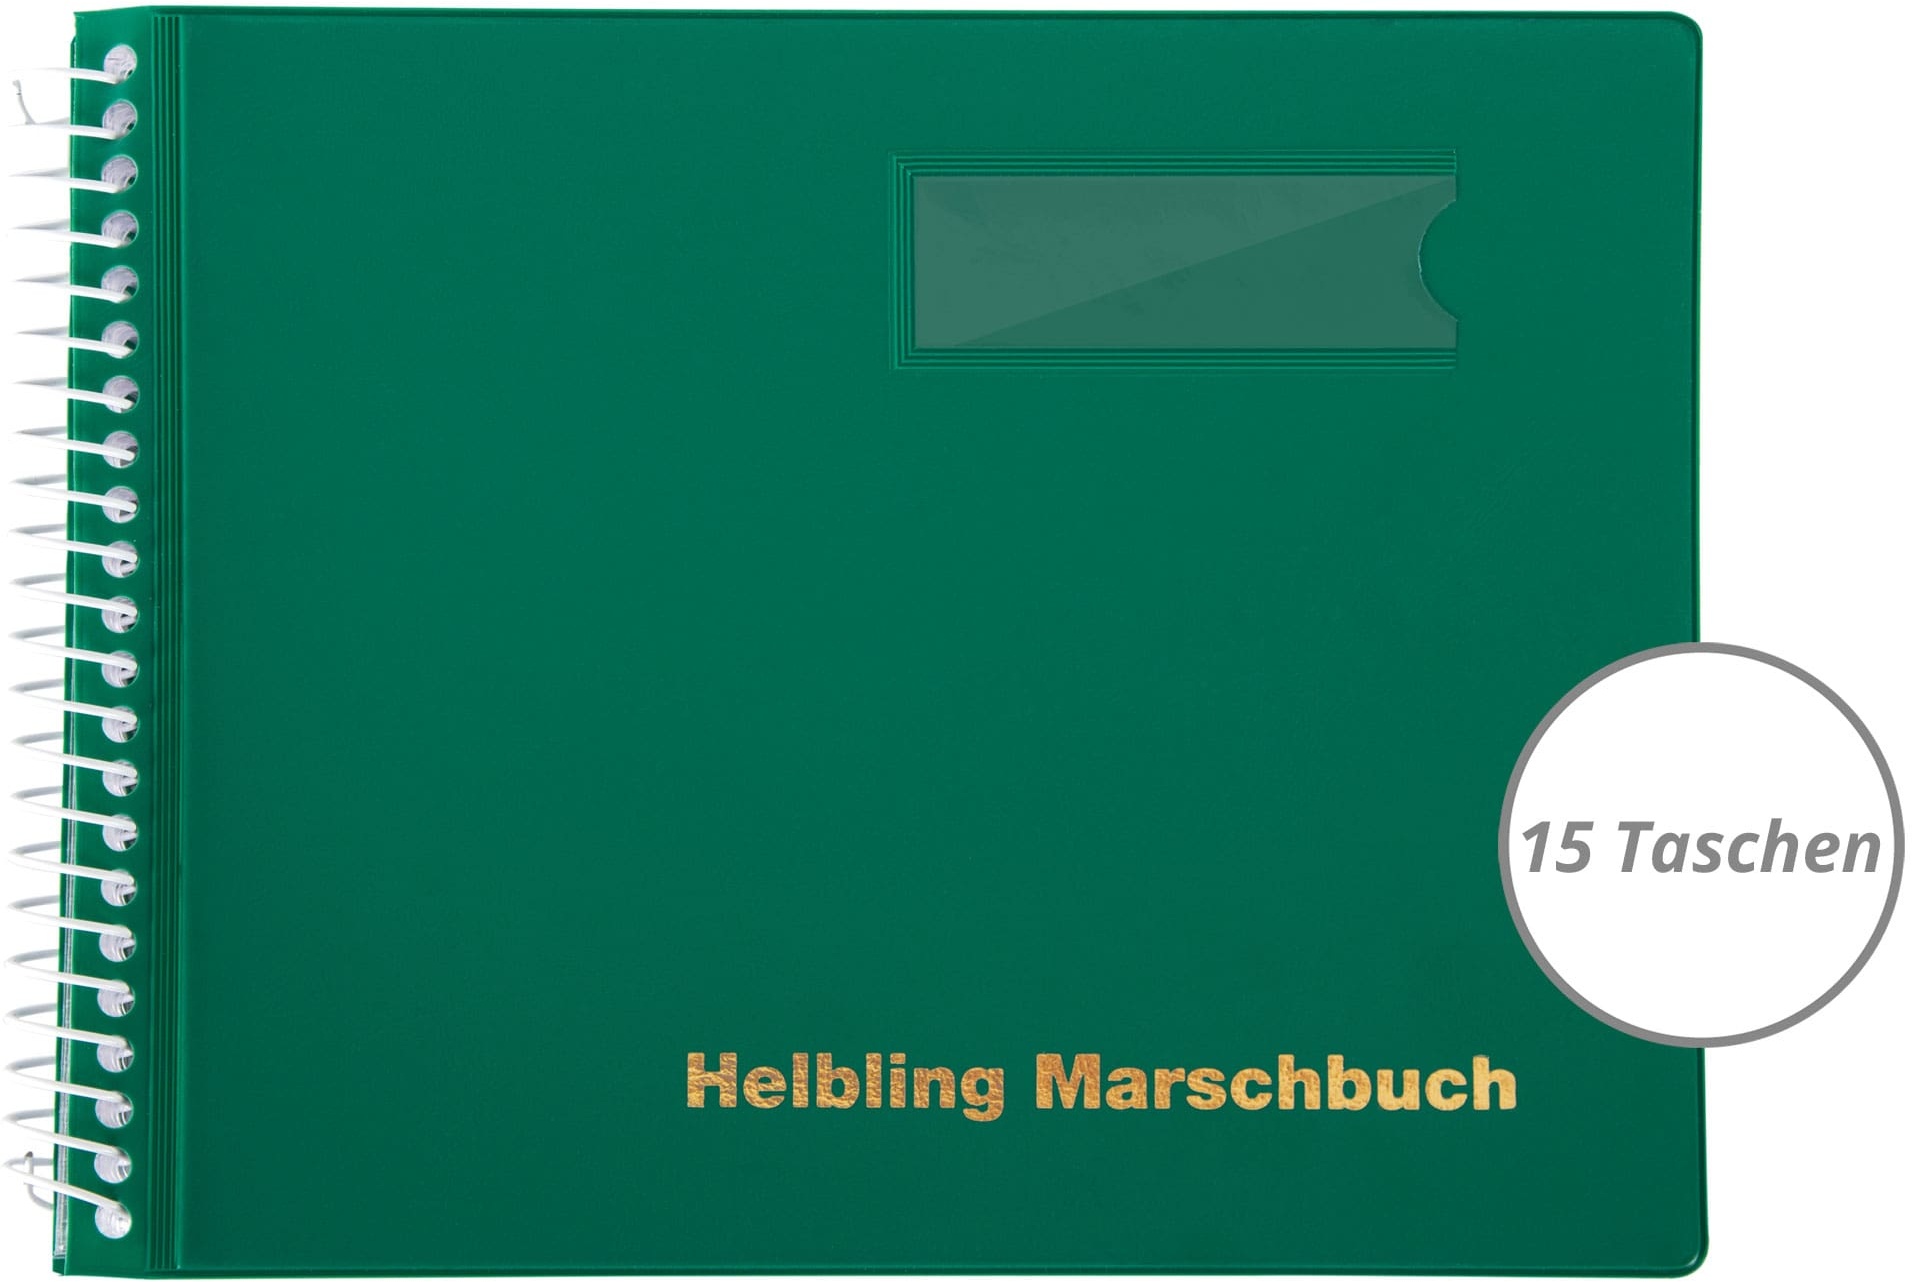 Helbling BMG15 Marschbuch grün 15 Taschen